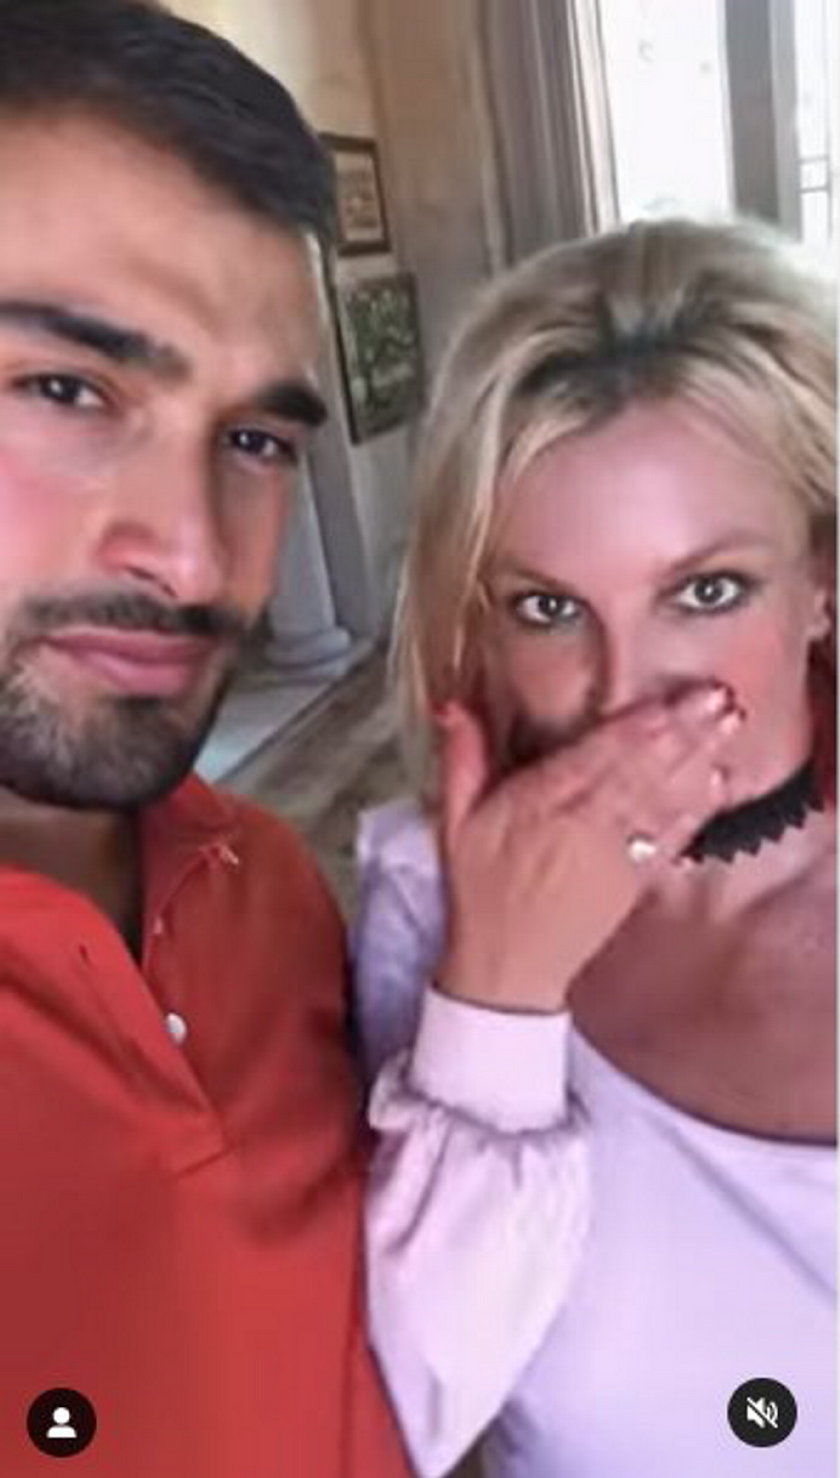 Britney Spears chce znów zostać mamą!